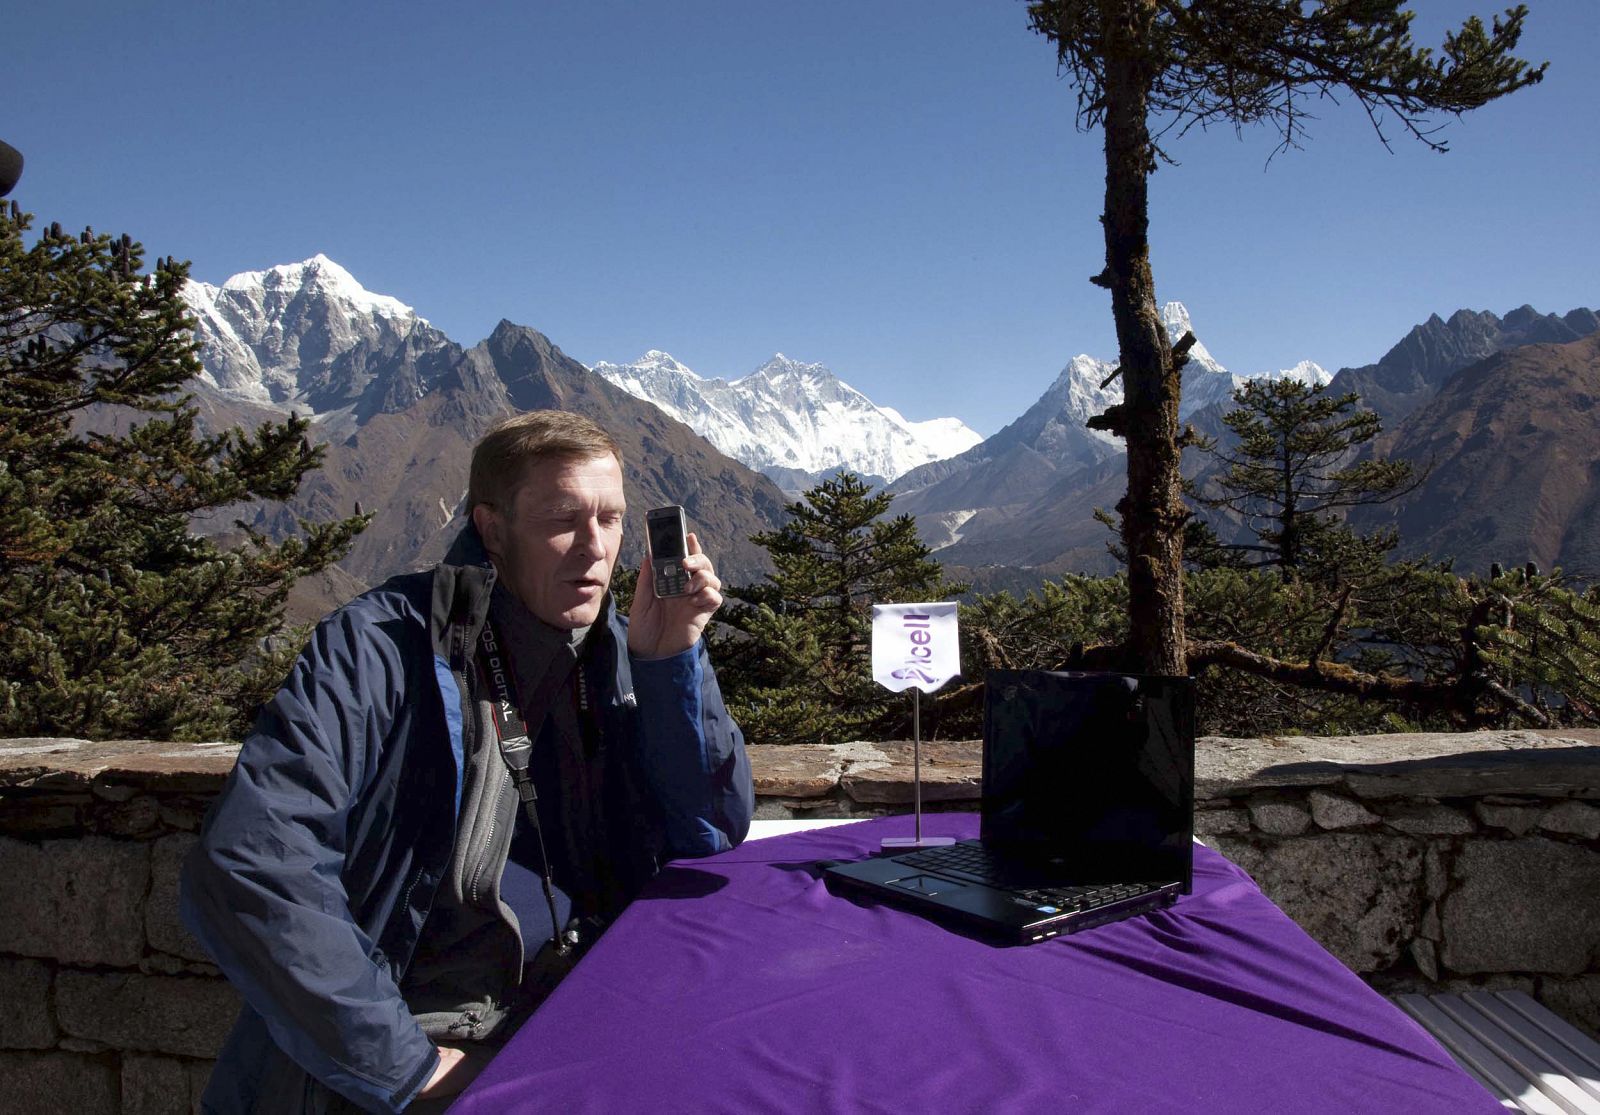 N La estación de conexión de tercera generación (3G) situada en el punto más alto de la tierra, en concreto a 5.200 metros de altura a los pies del Everest, empieza a operar en Nepal